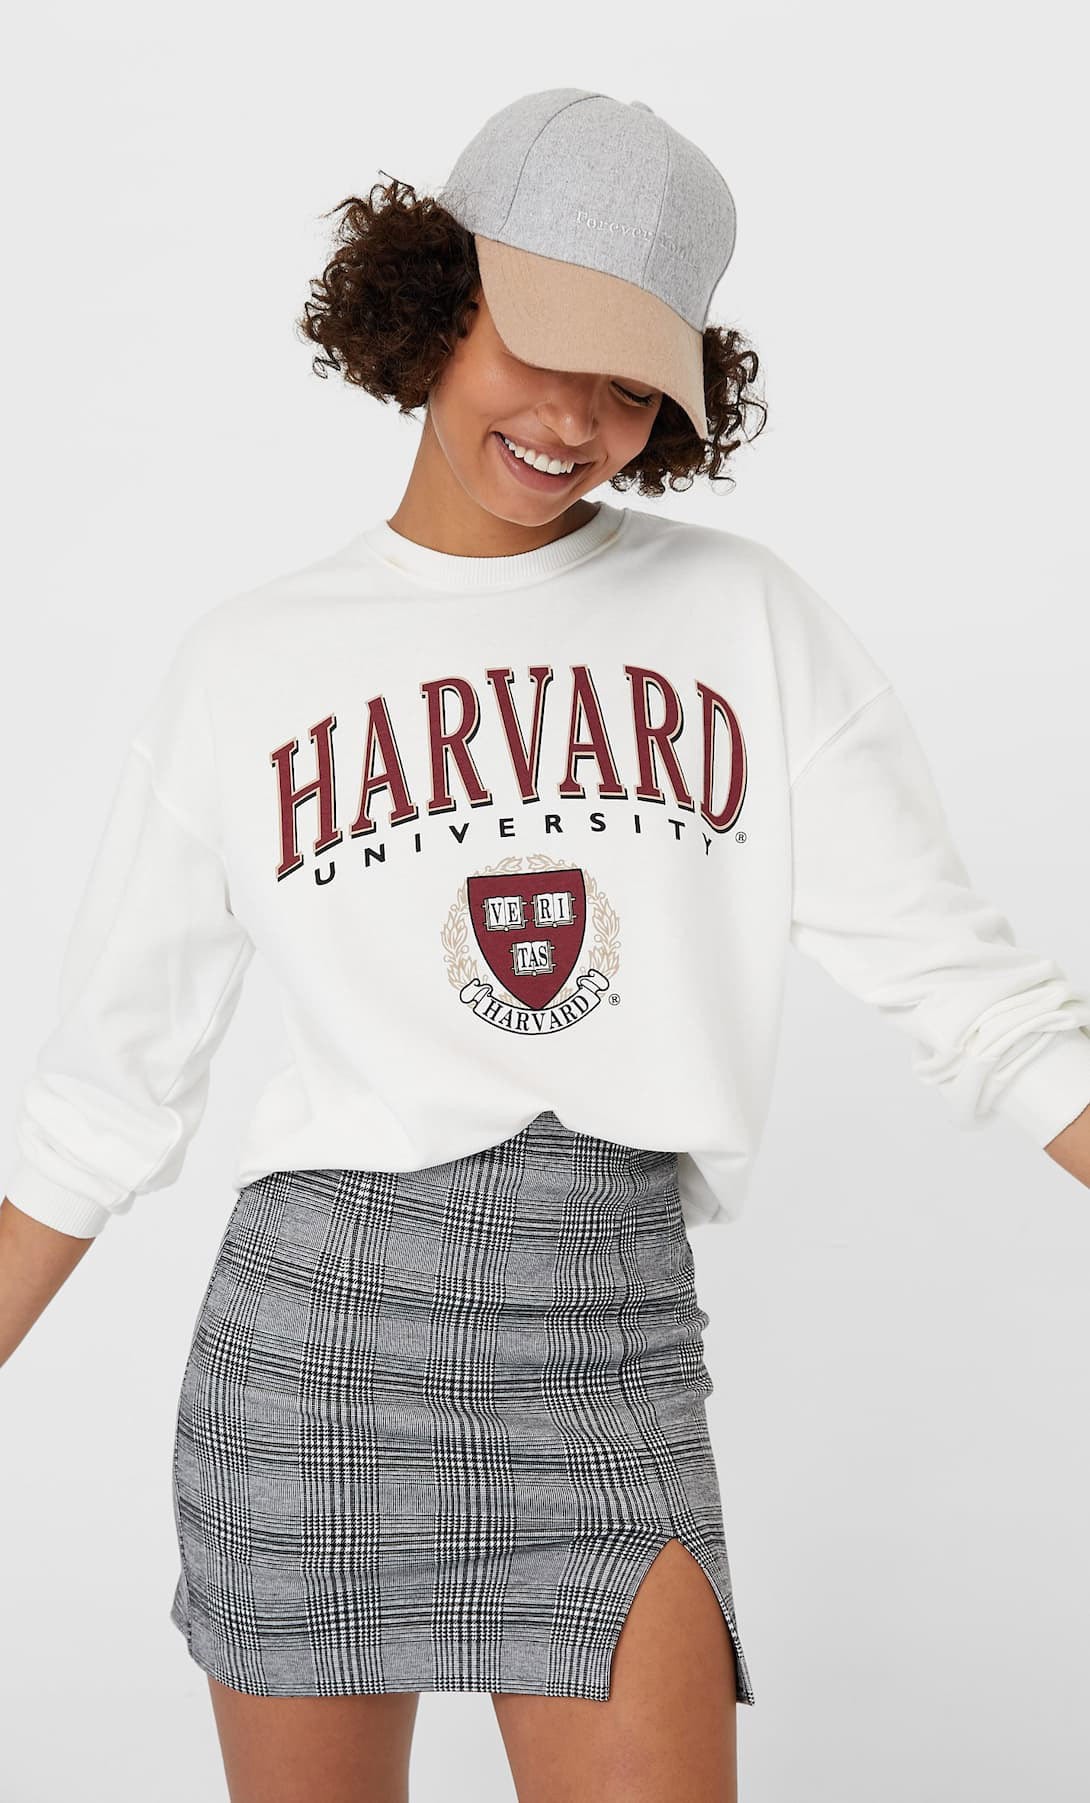 Harvard look for 90s